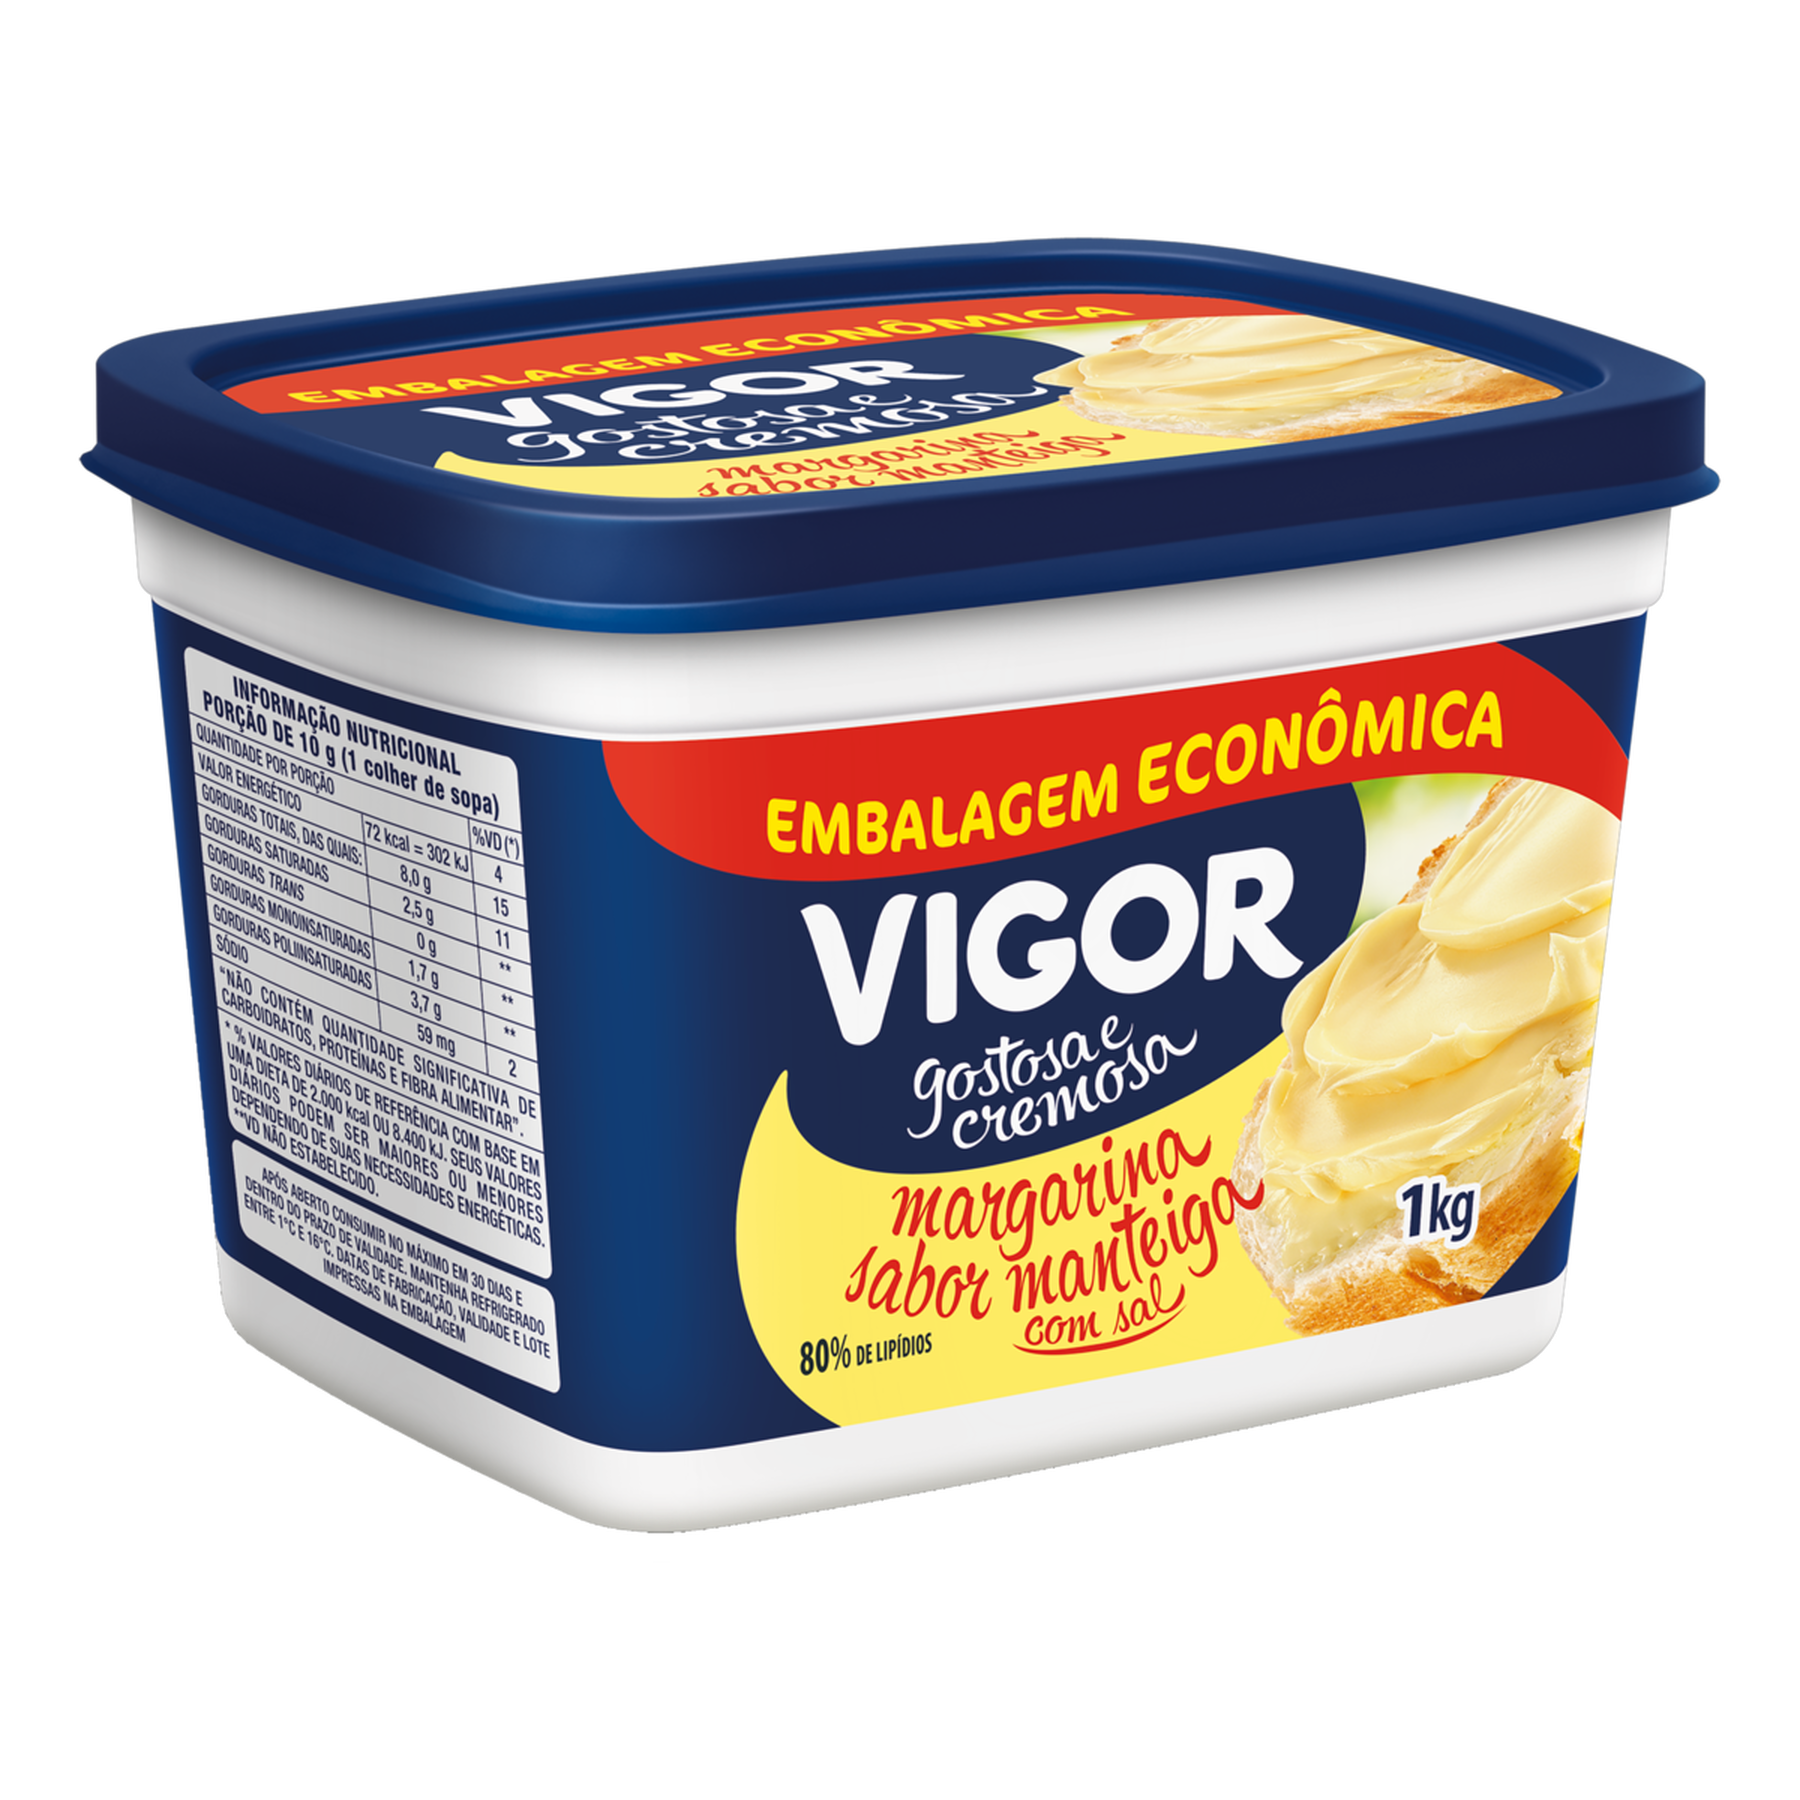 Margarina Manteiga com Sal Vigor Pote 1kg Embalagem Econômica